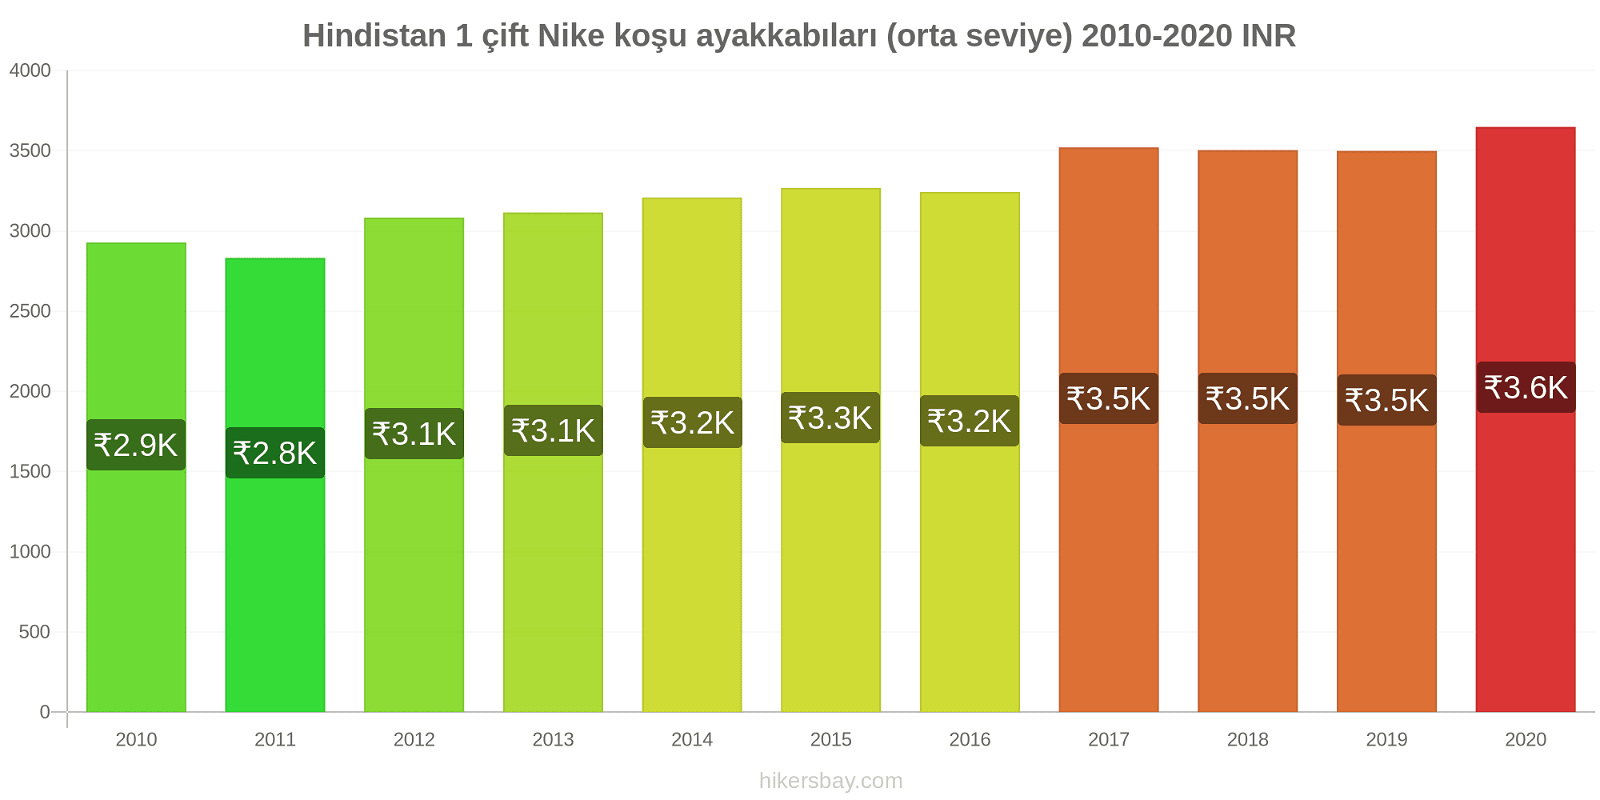 Hindistan fiyat değişiklikleri 1 çift Nike koşu ayakkabıları (orta seviye) hikersbay.com